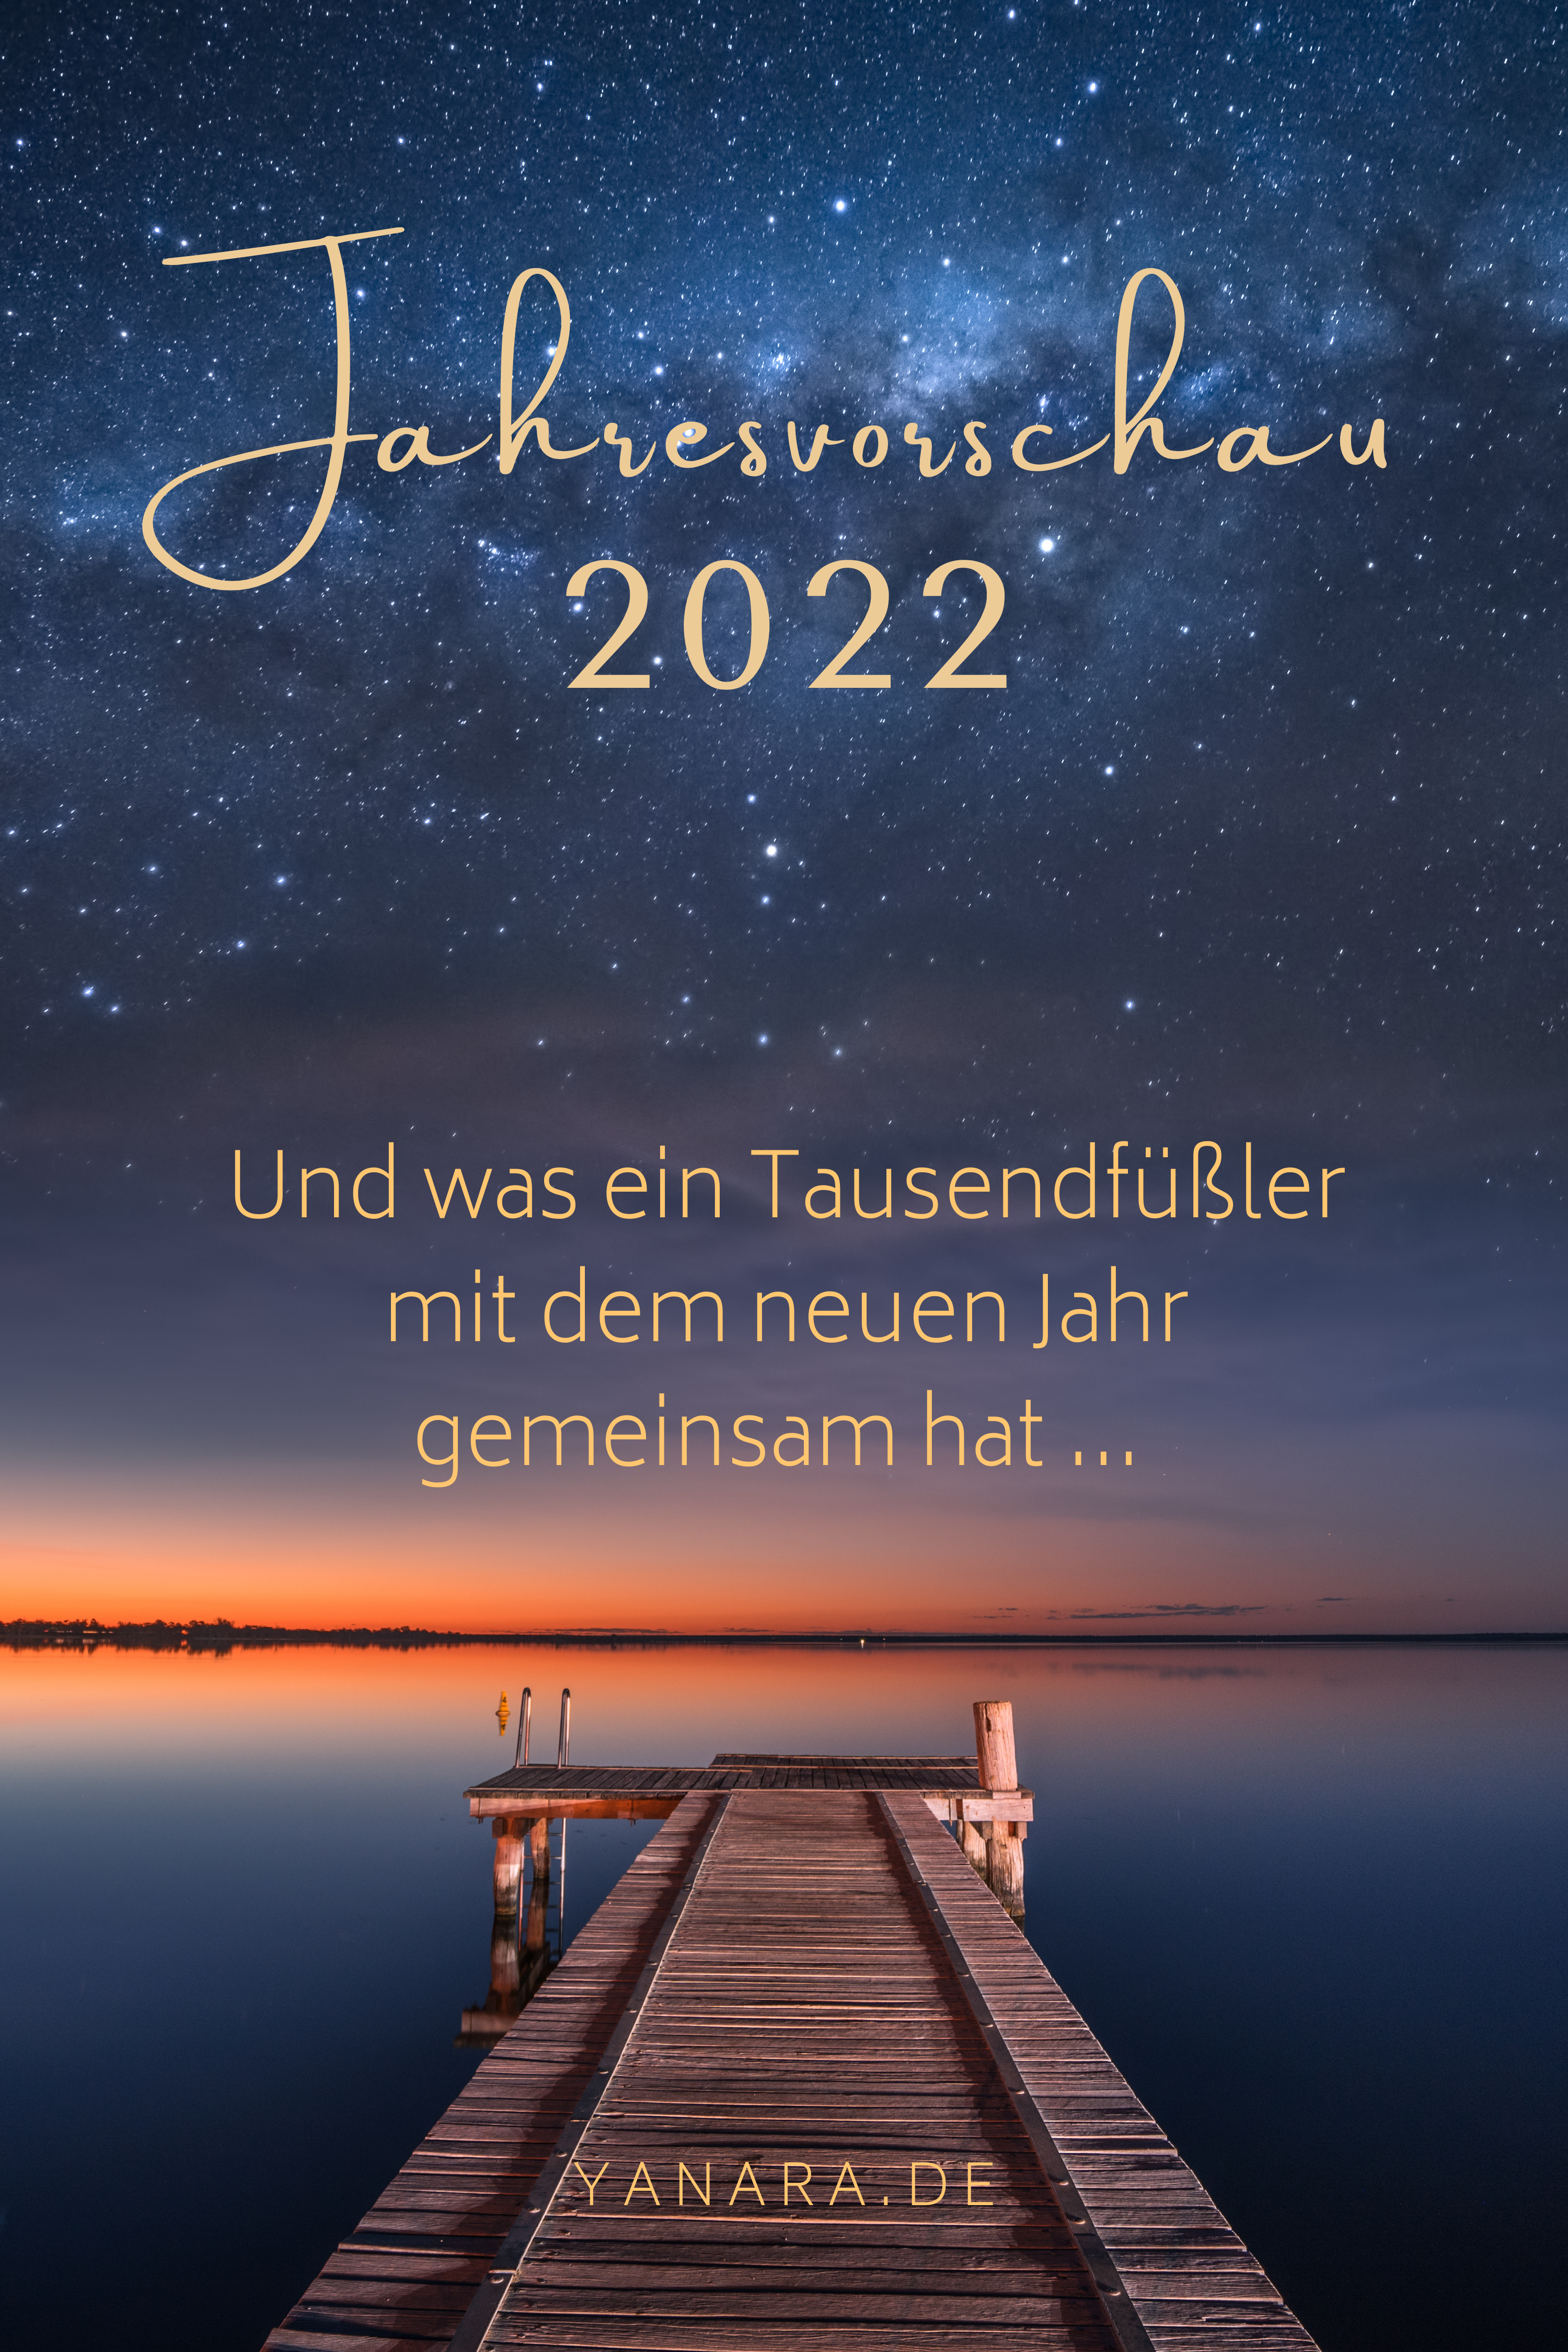 Jahresvorschau 2022 und was ein Tausendfüßler mit dem neuen Jahr gemeinsam hat #zeitqualität #seelenbotschaft #transformation #bewusstseinssprung #veränderung #spiritualität